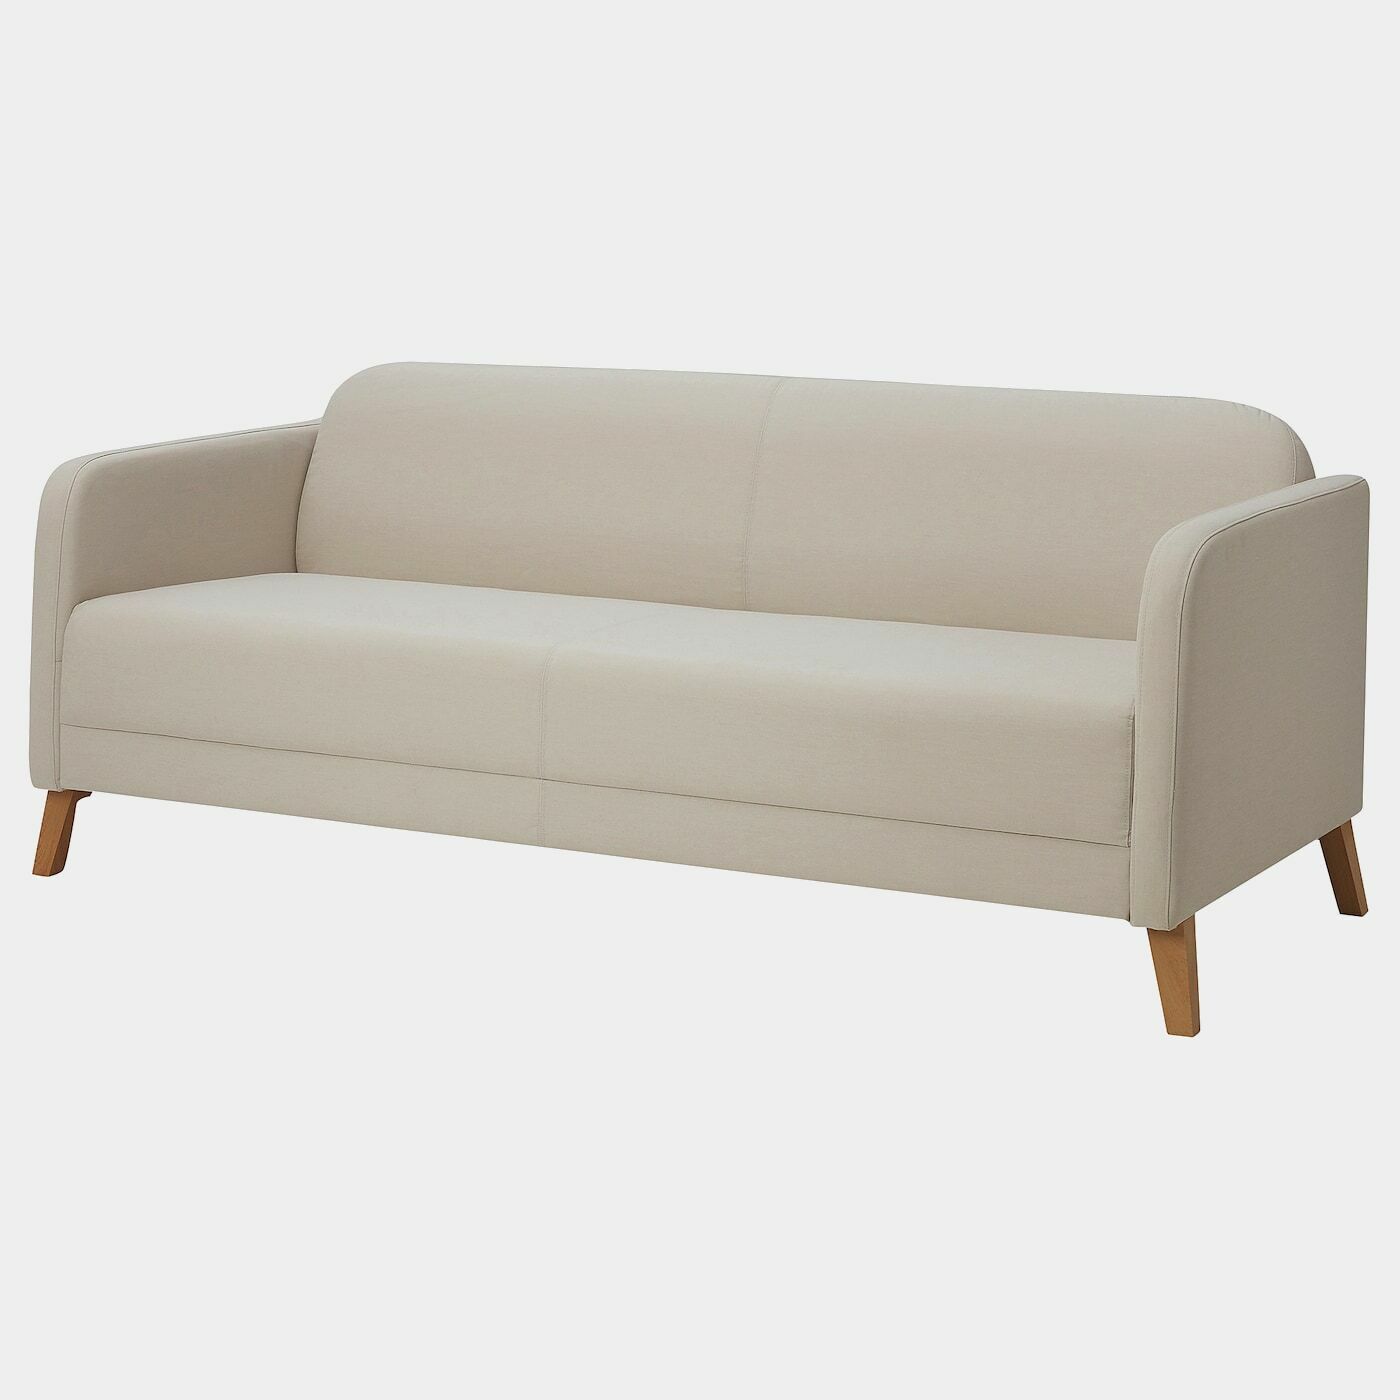 LINANÄS 3er-Sofa  -  - Möbel Ideen für dein Zuhause von Home Trends. Möbel Trends von Social Media Influencer für dein Skandi Zuhause.